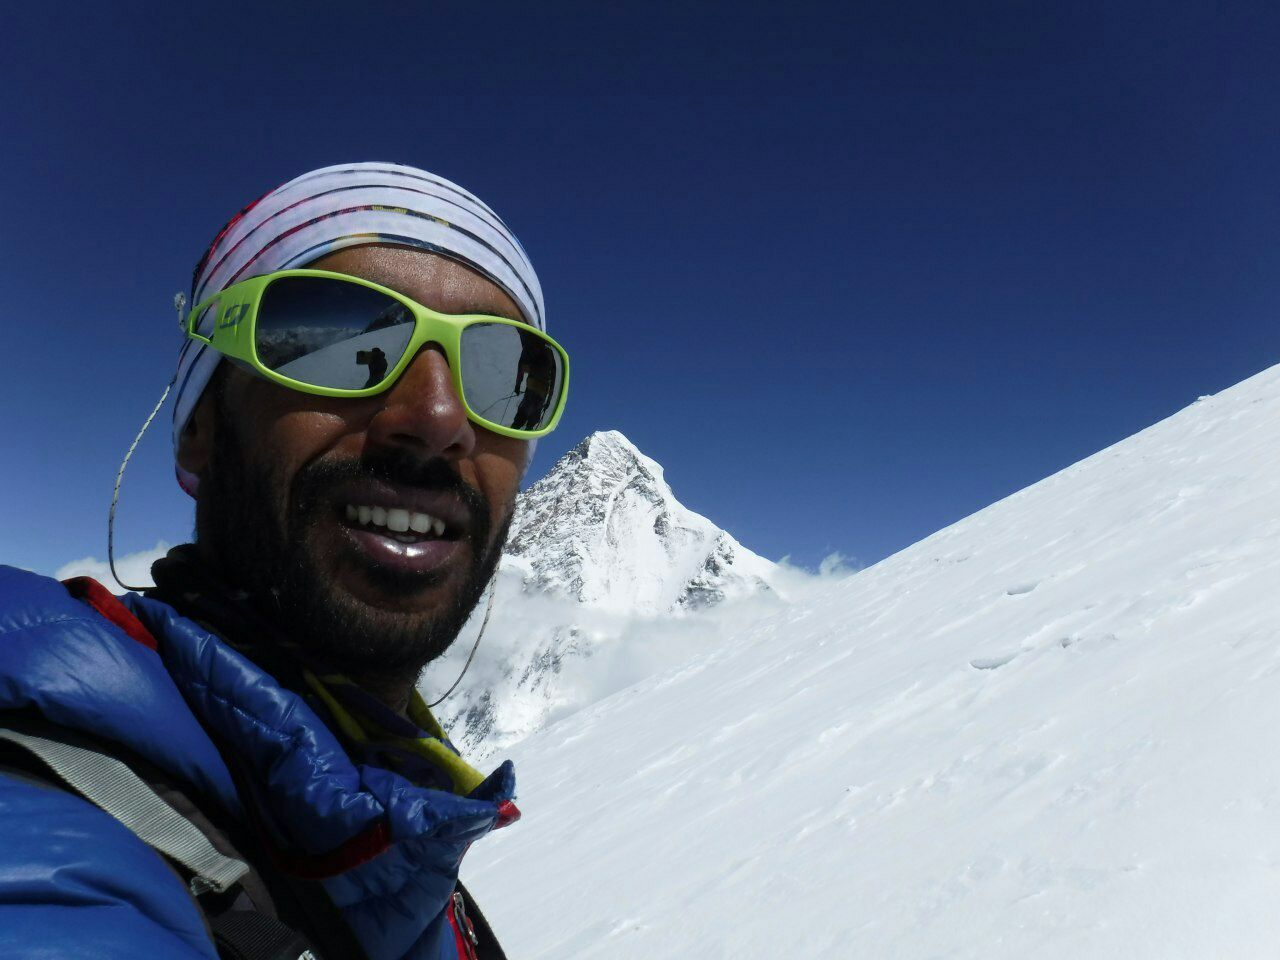 صعود بدون کپسول اکسیژن کوهنورد گیلانی به دوازدهمین قله بلند در دنیا